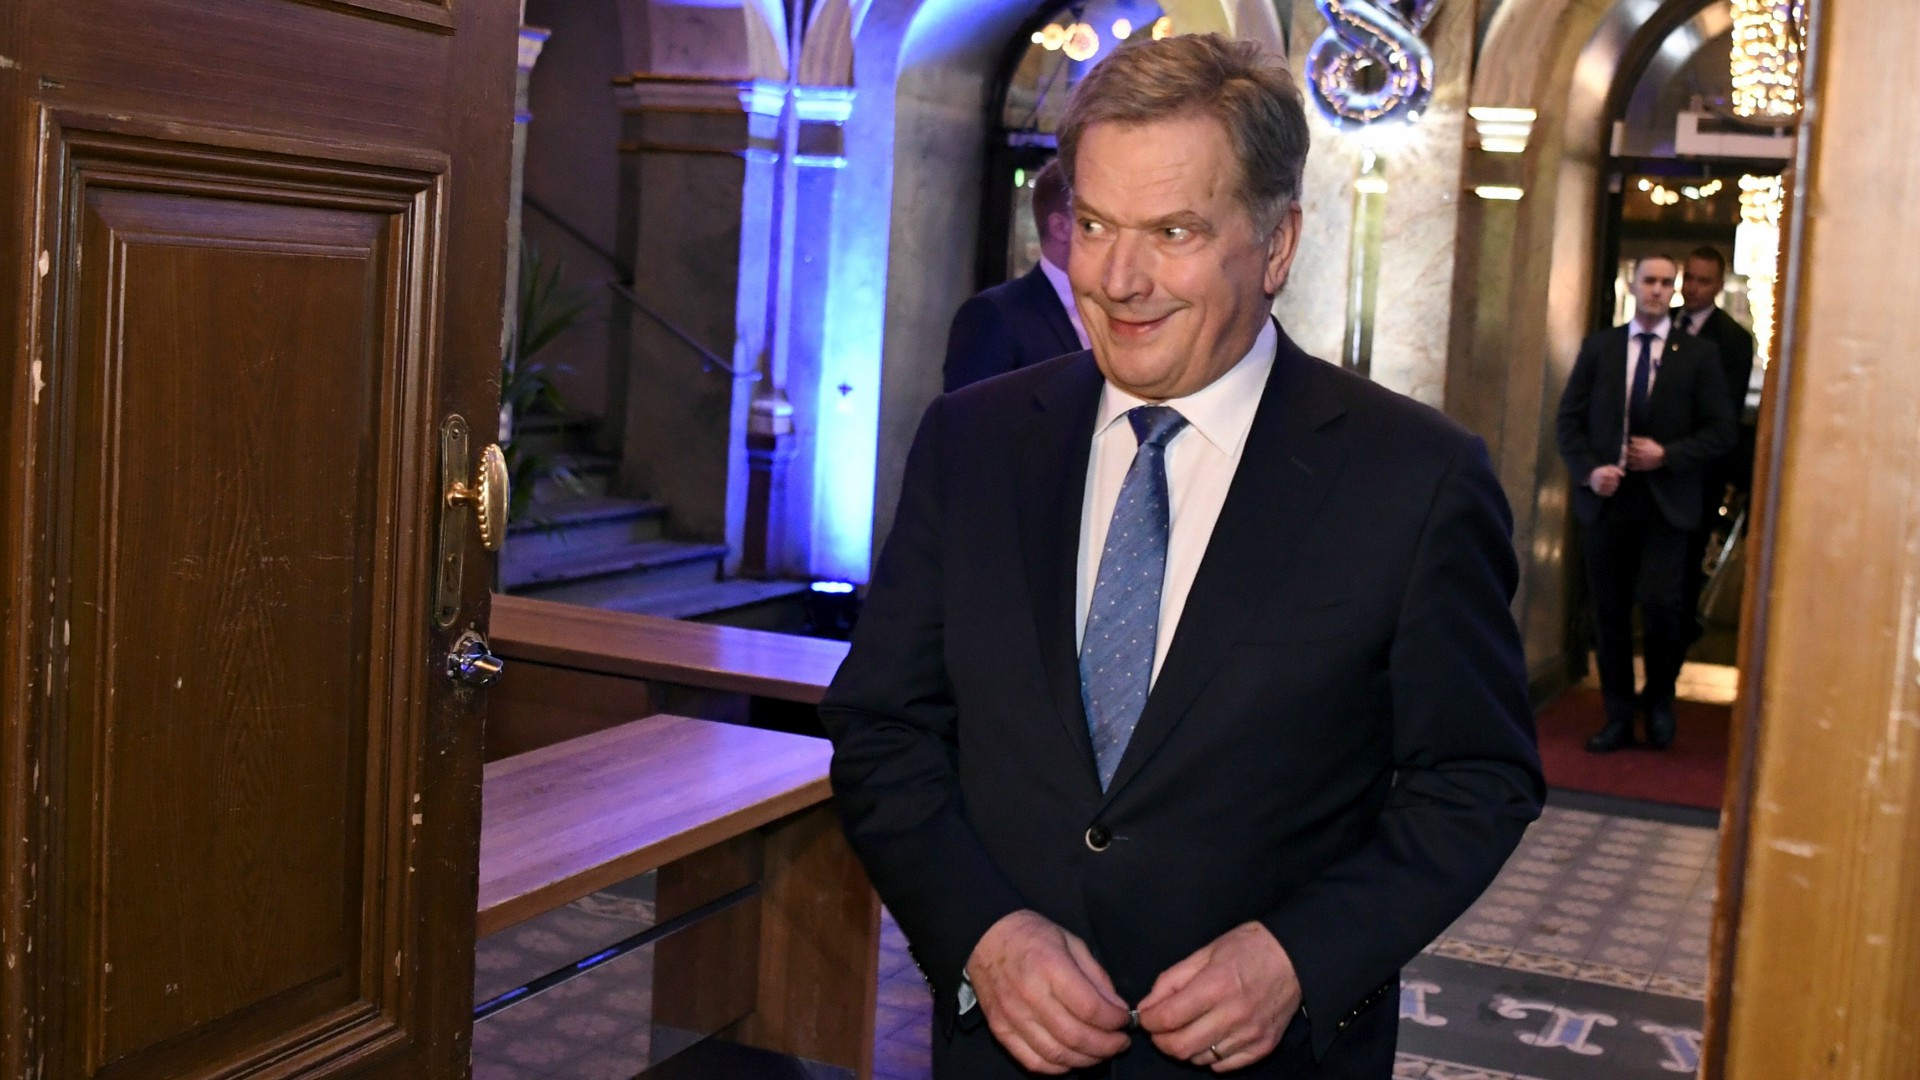 Sauli Niinistö es reelegido como presidente de Finlandia